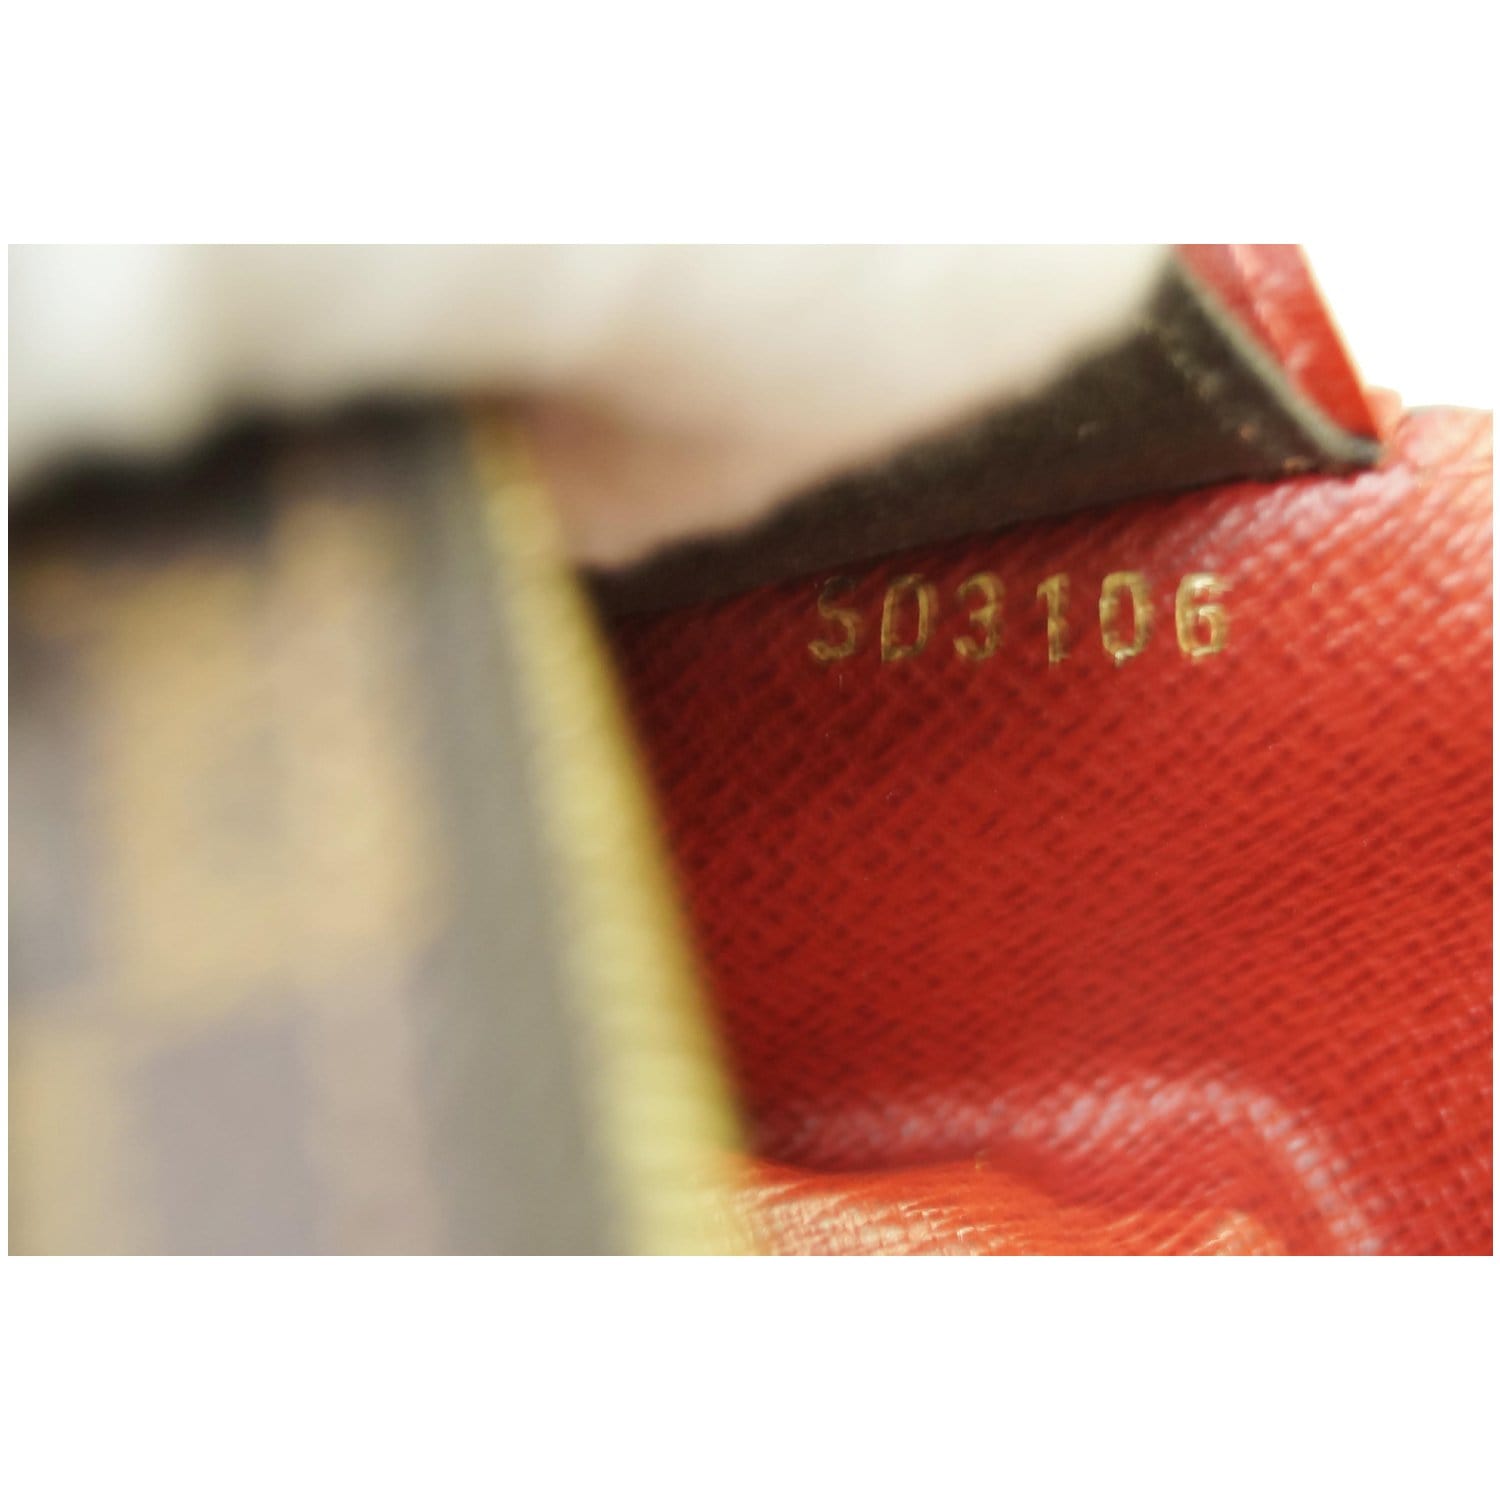 Louis Vuitton emilie wallet damier ebene ca1112